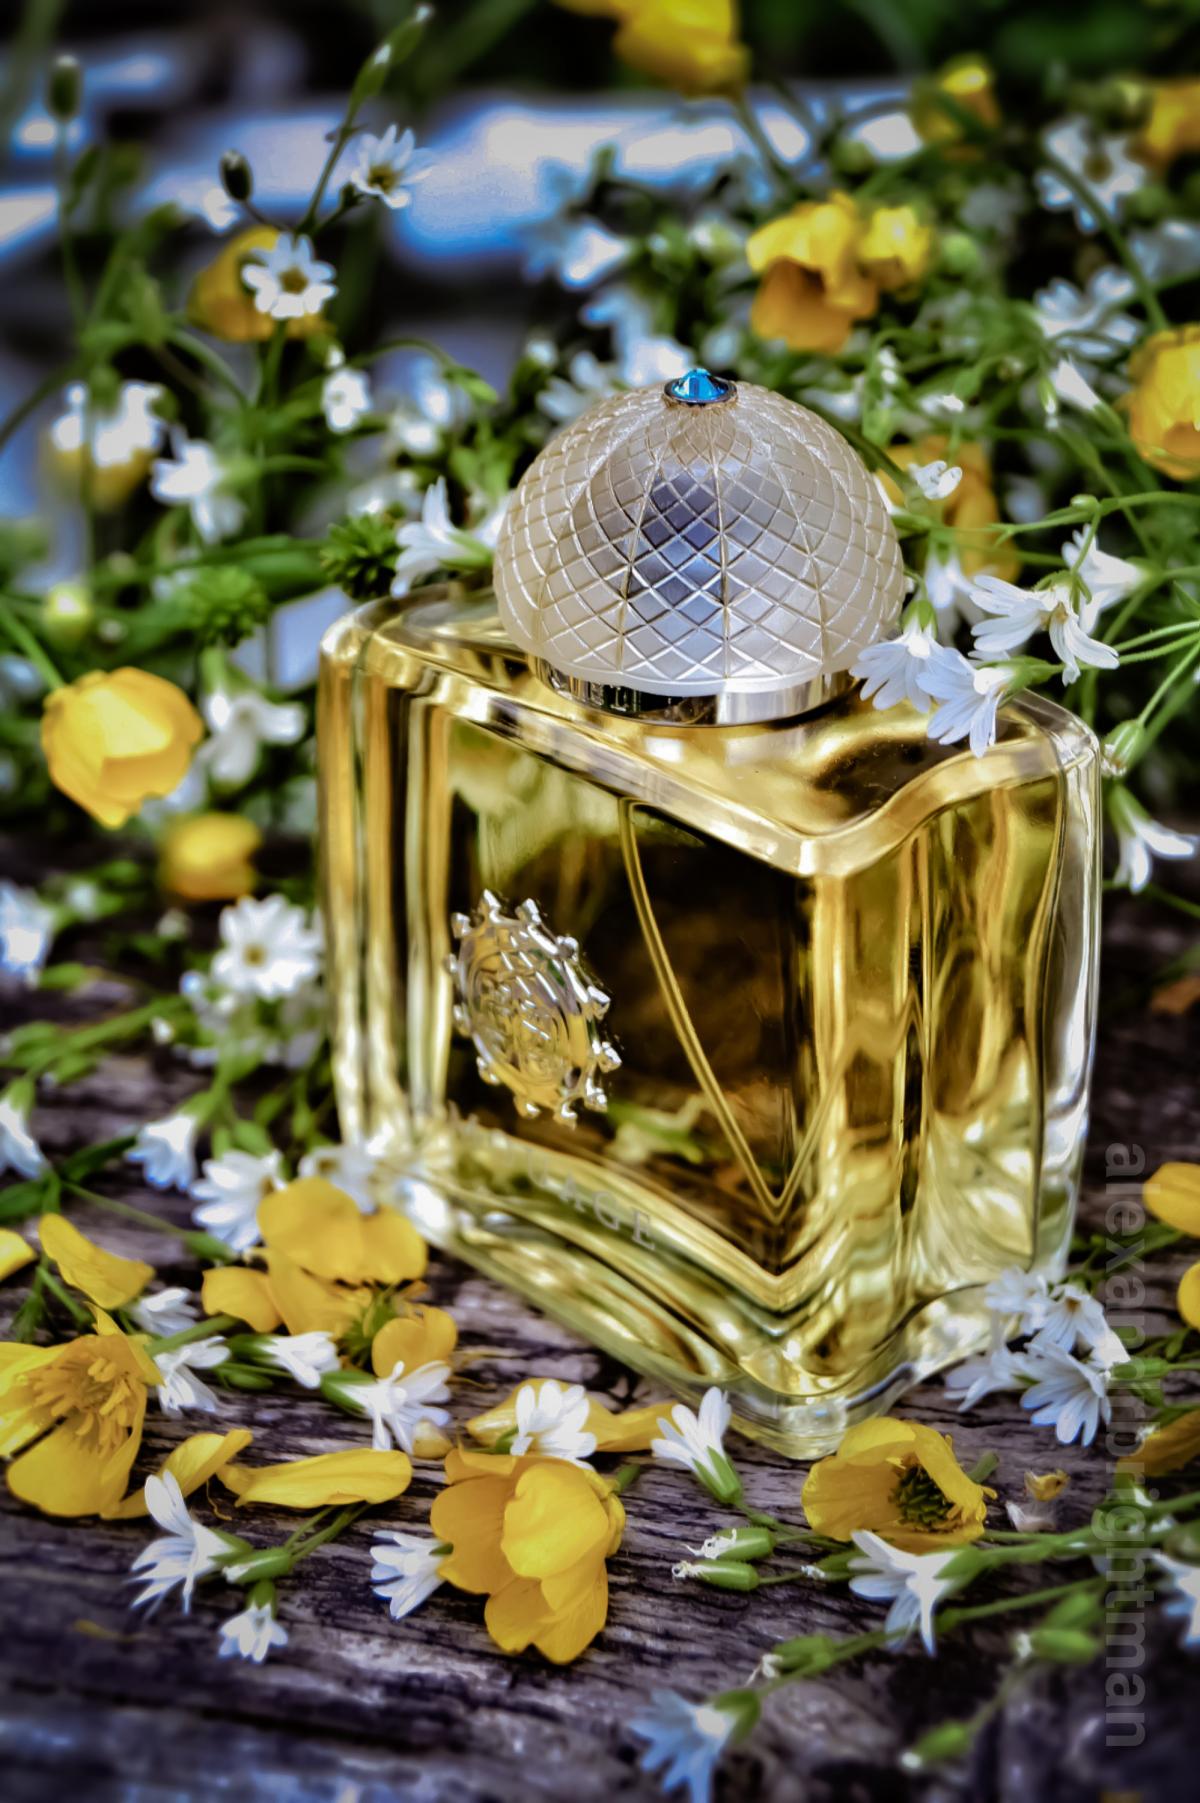 Ciel Pour Femme Amouage perfume - a fragrance for women 2003